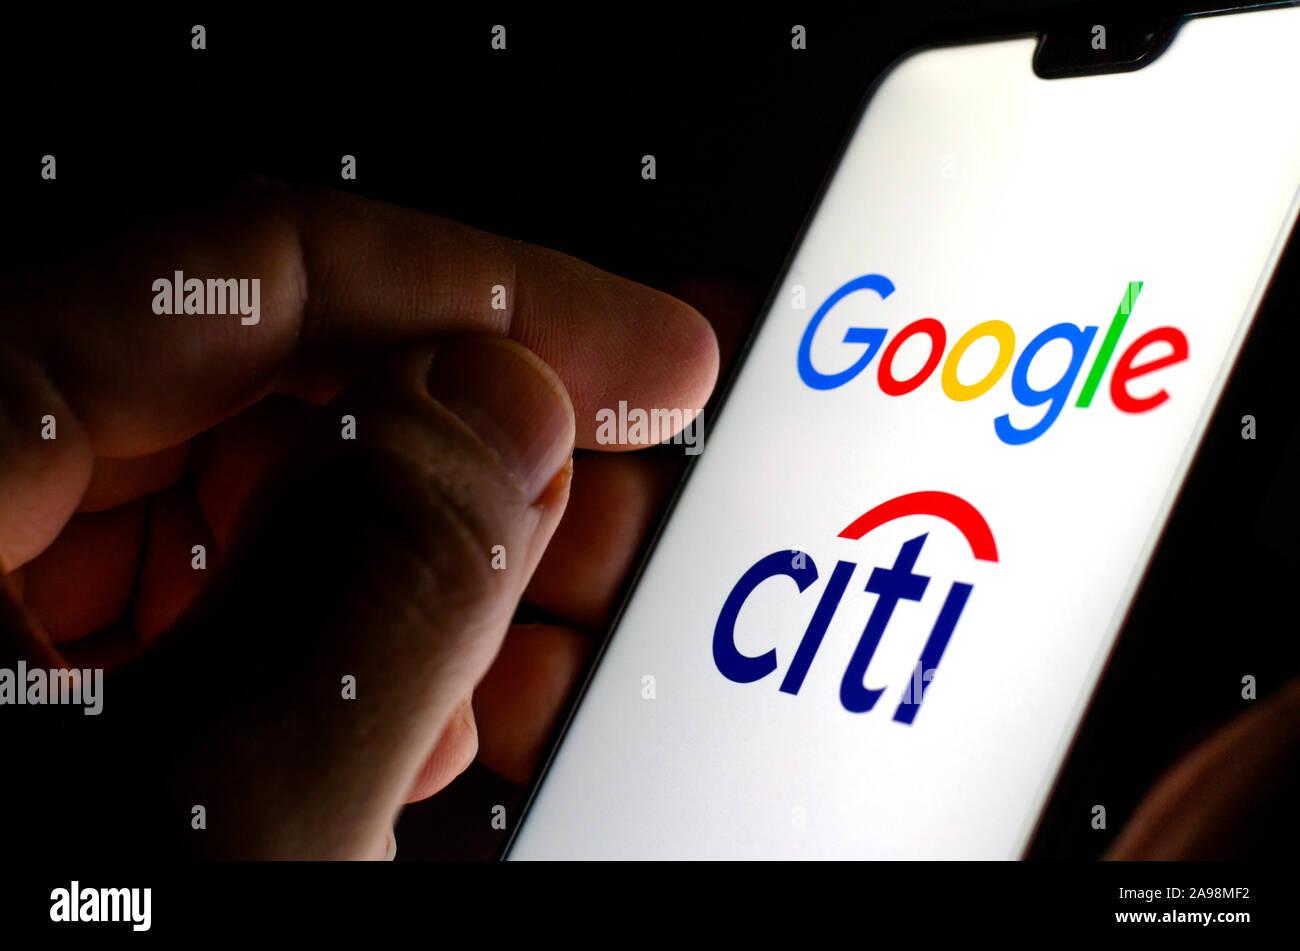 Google e Citigroup logo su schermo incandescente in mani. Foto illustrative per la notizia che Google ha collaborato con la Citibank nel progetto denominato Cache Foto Stock